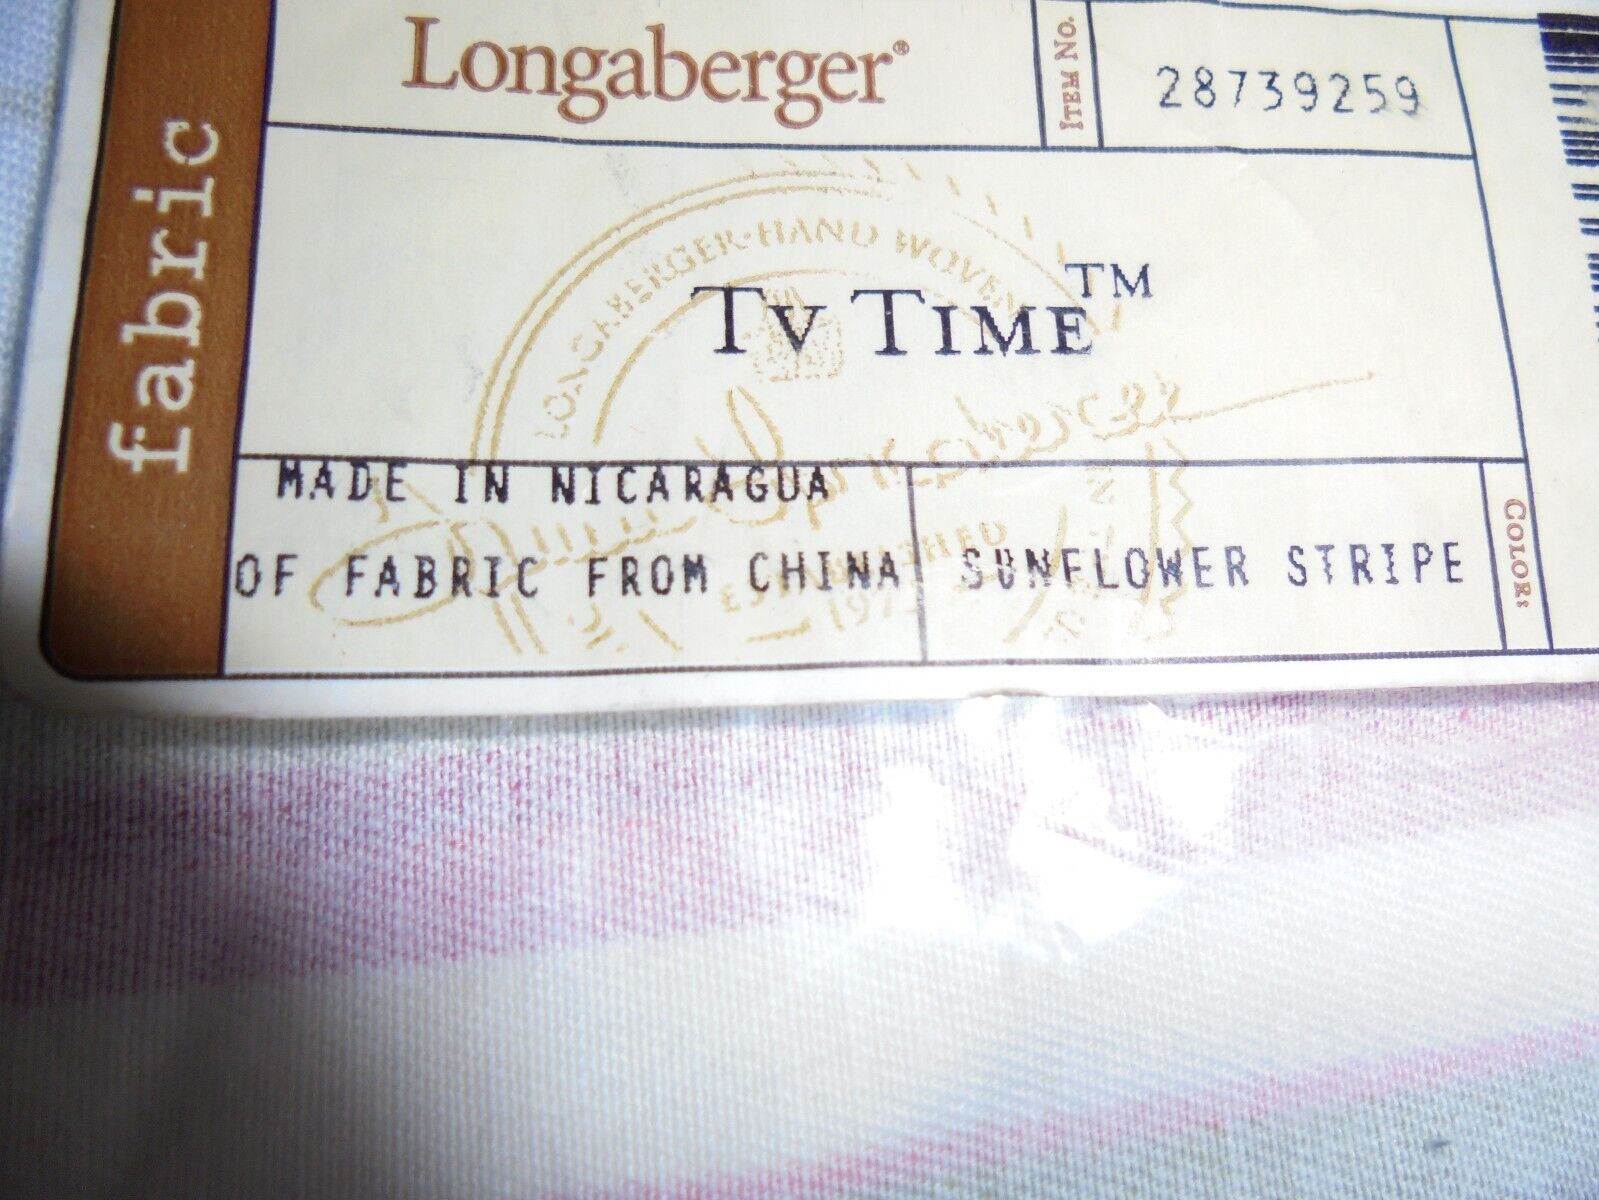 Longaberger Sunflower Stripe Regular TV Time Basket Liner #28739259 - NEW